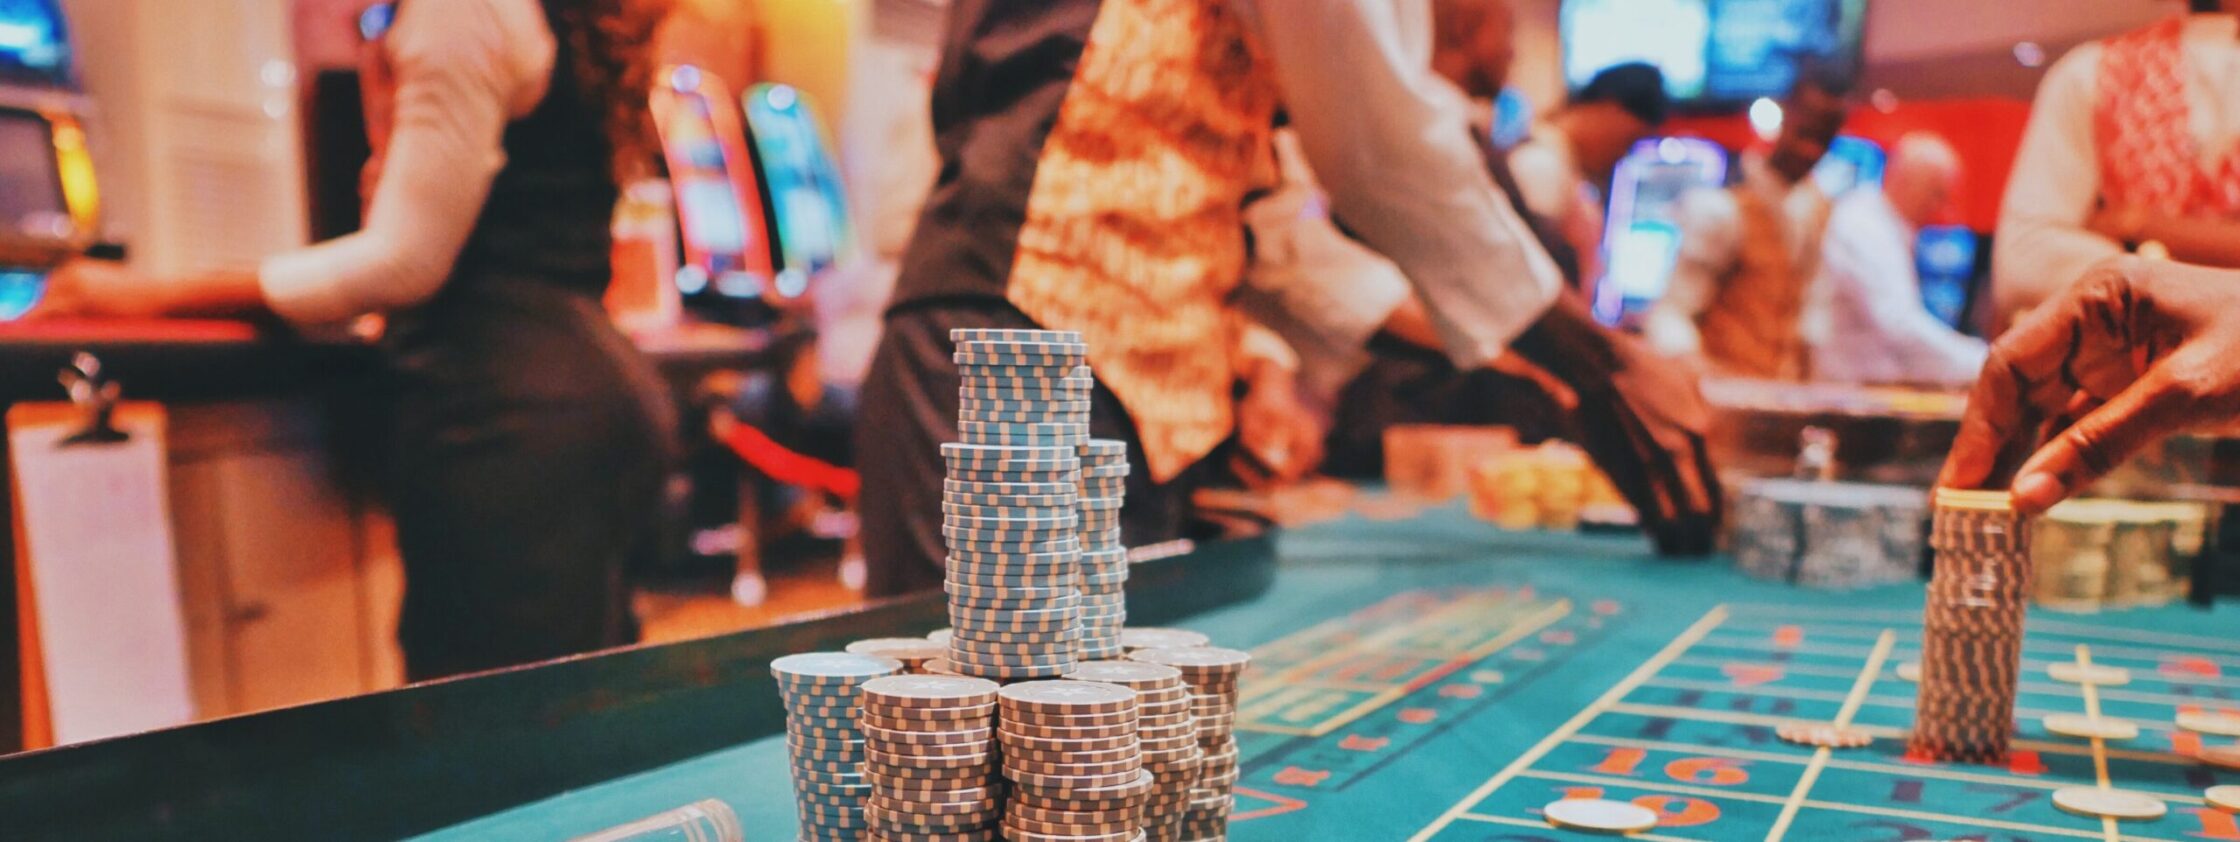 ethics of gambling